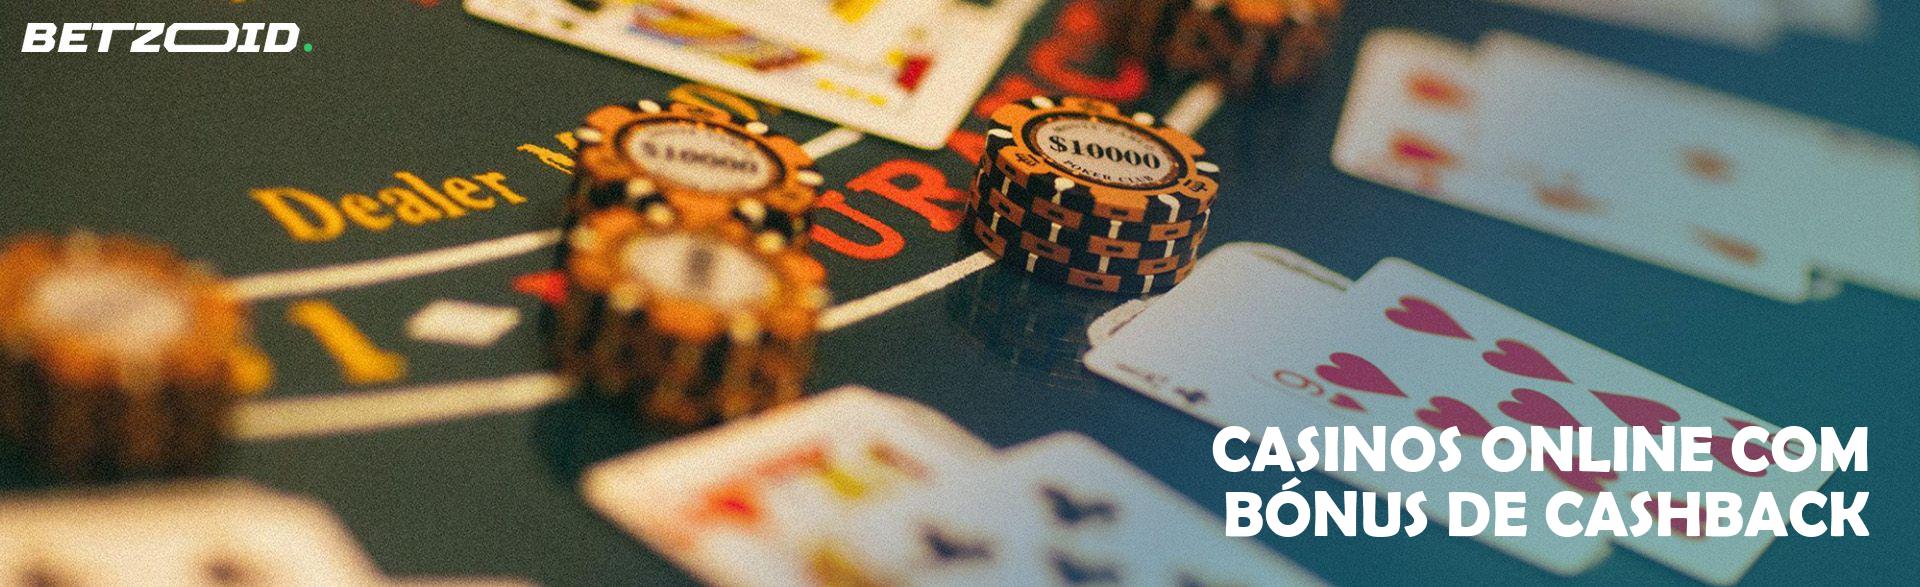 Casinos Online com Bónus de Cashback.